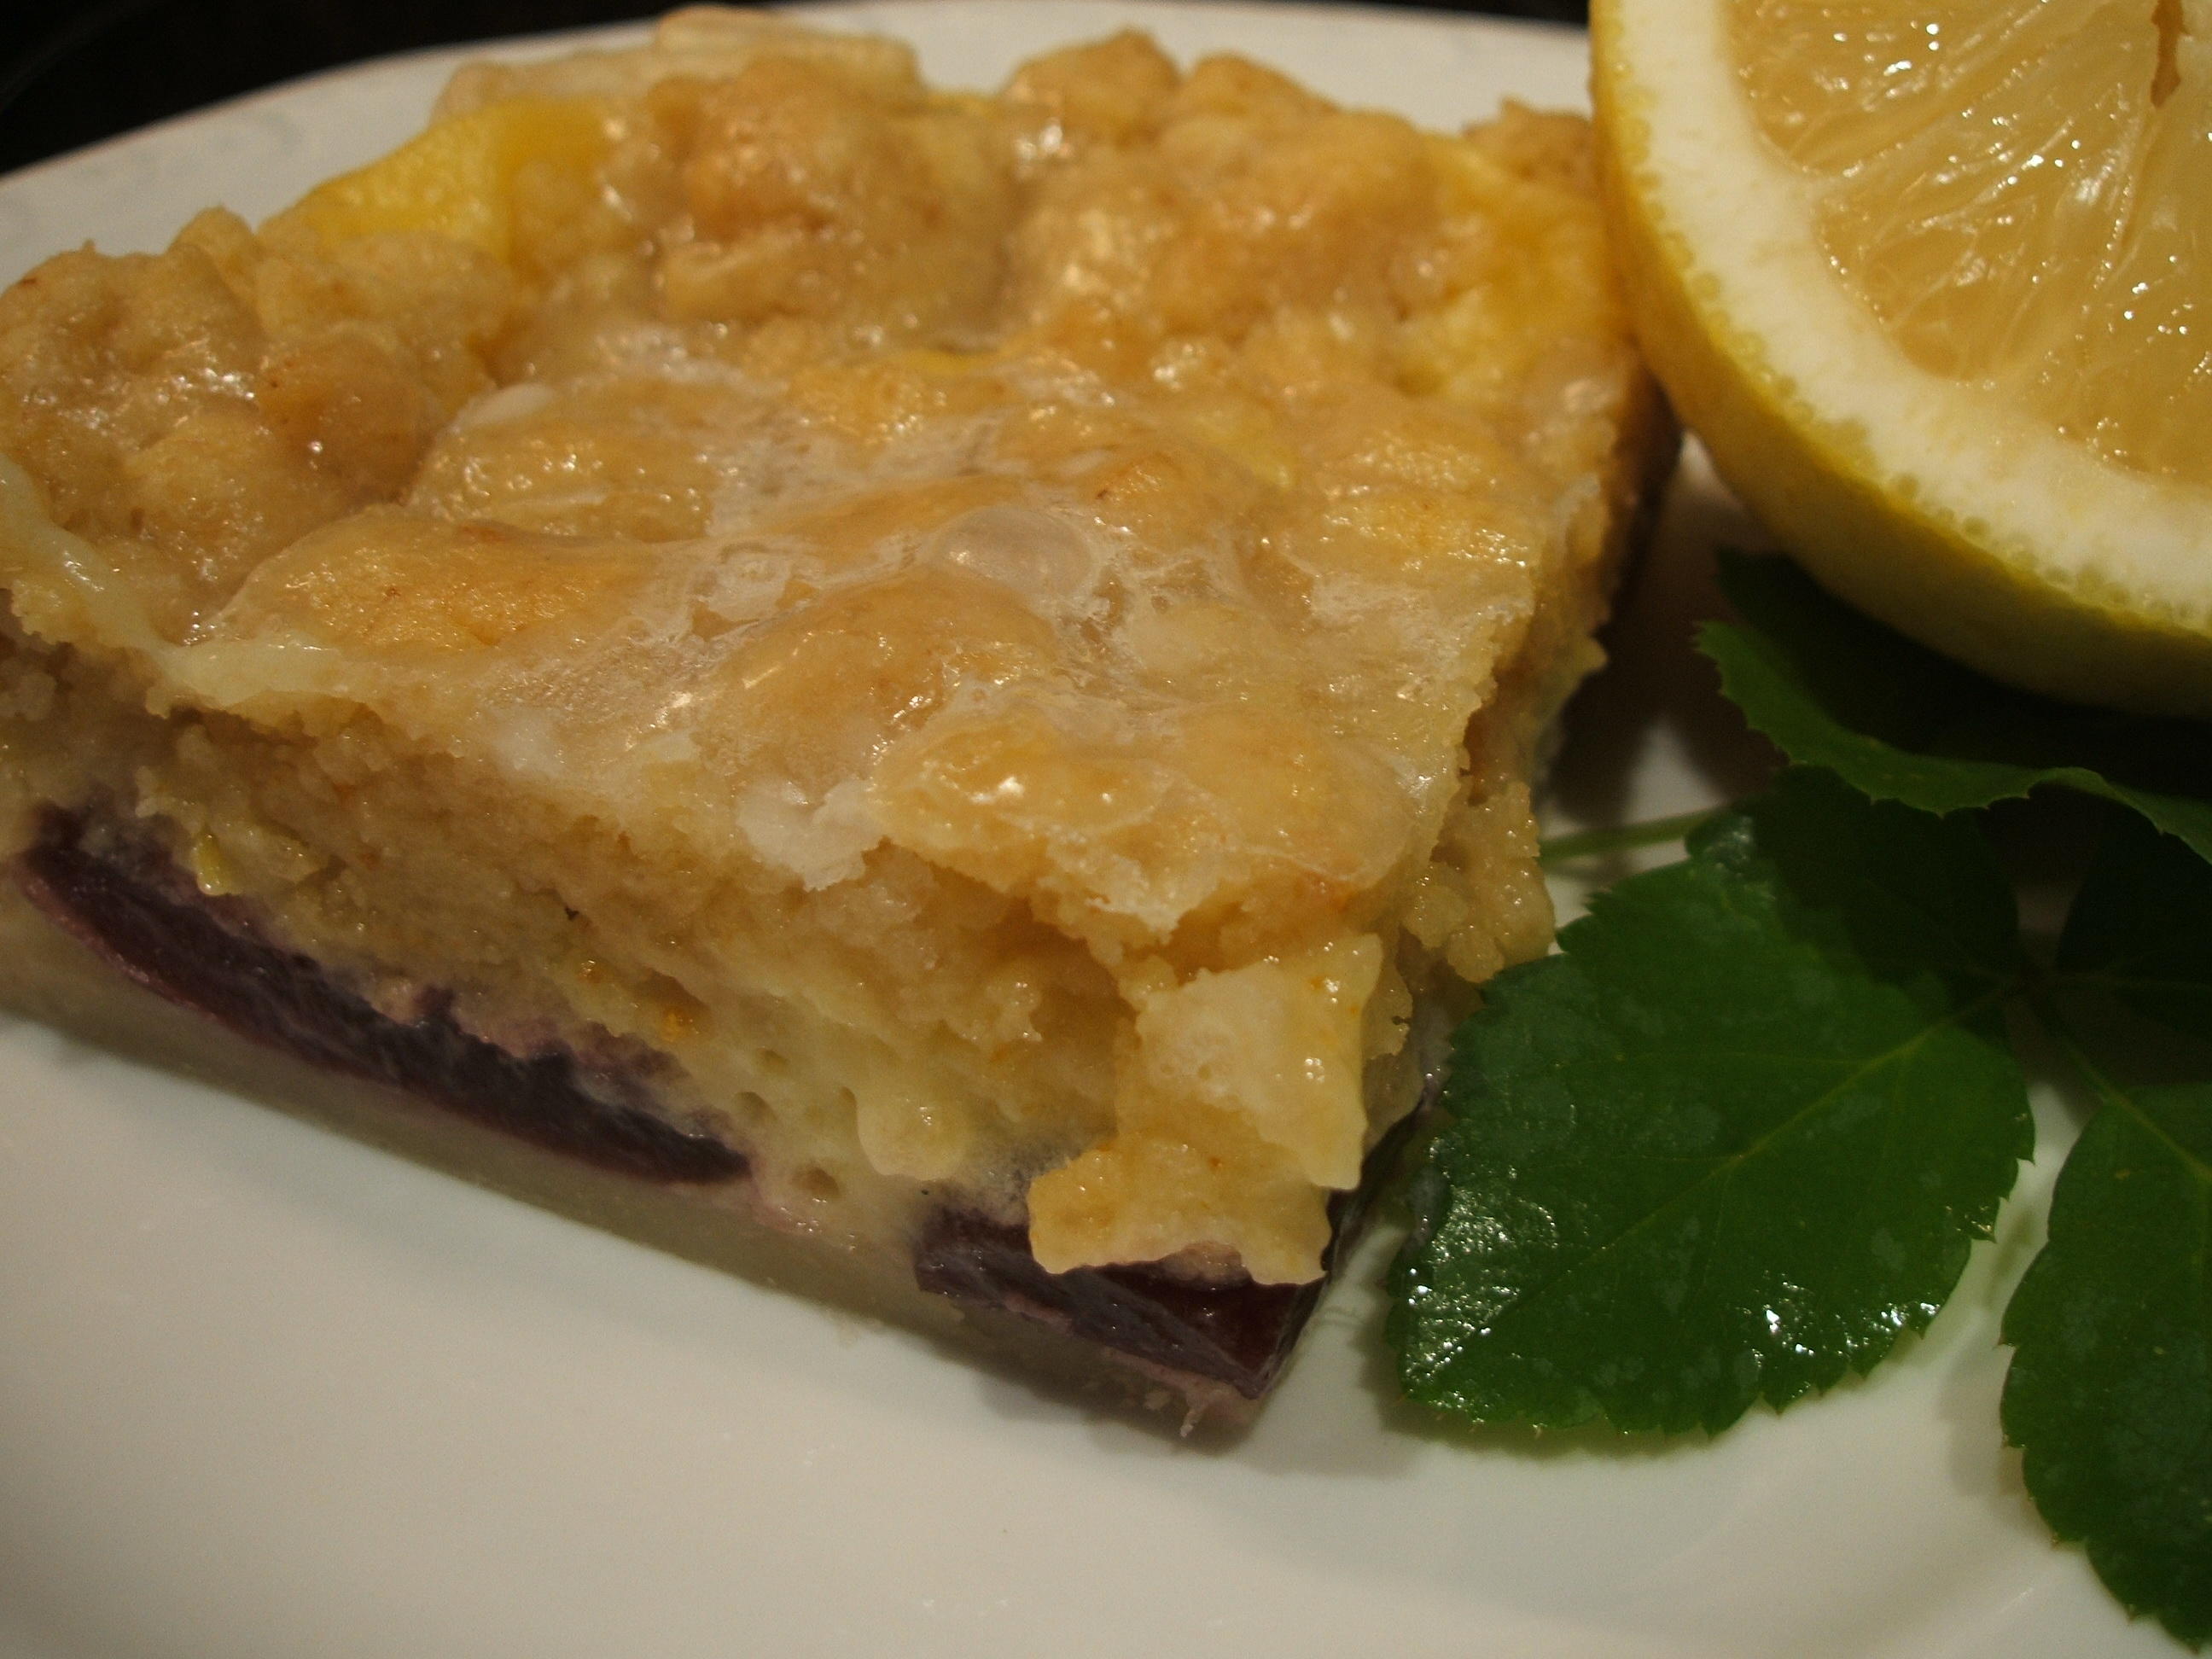 Backen: Vanille-Zitronenschnitte mit Kirschen und Streusel - Rezept
Durch lunapiena